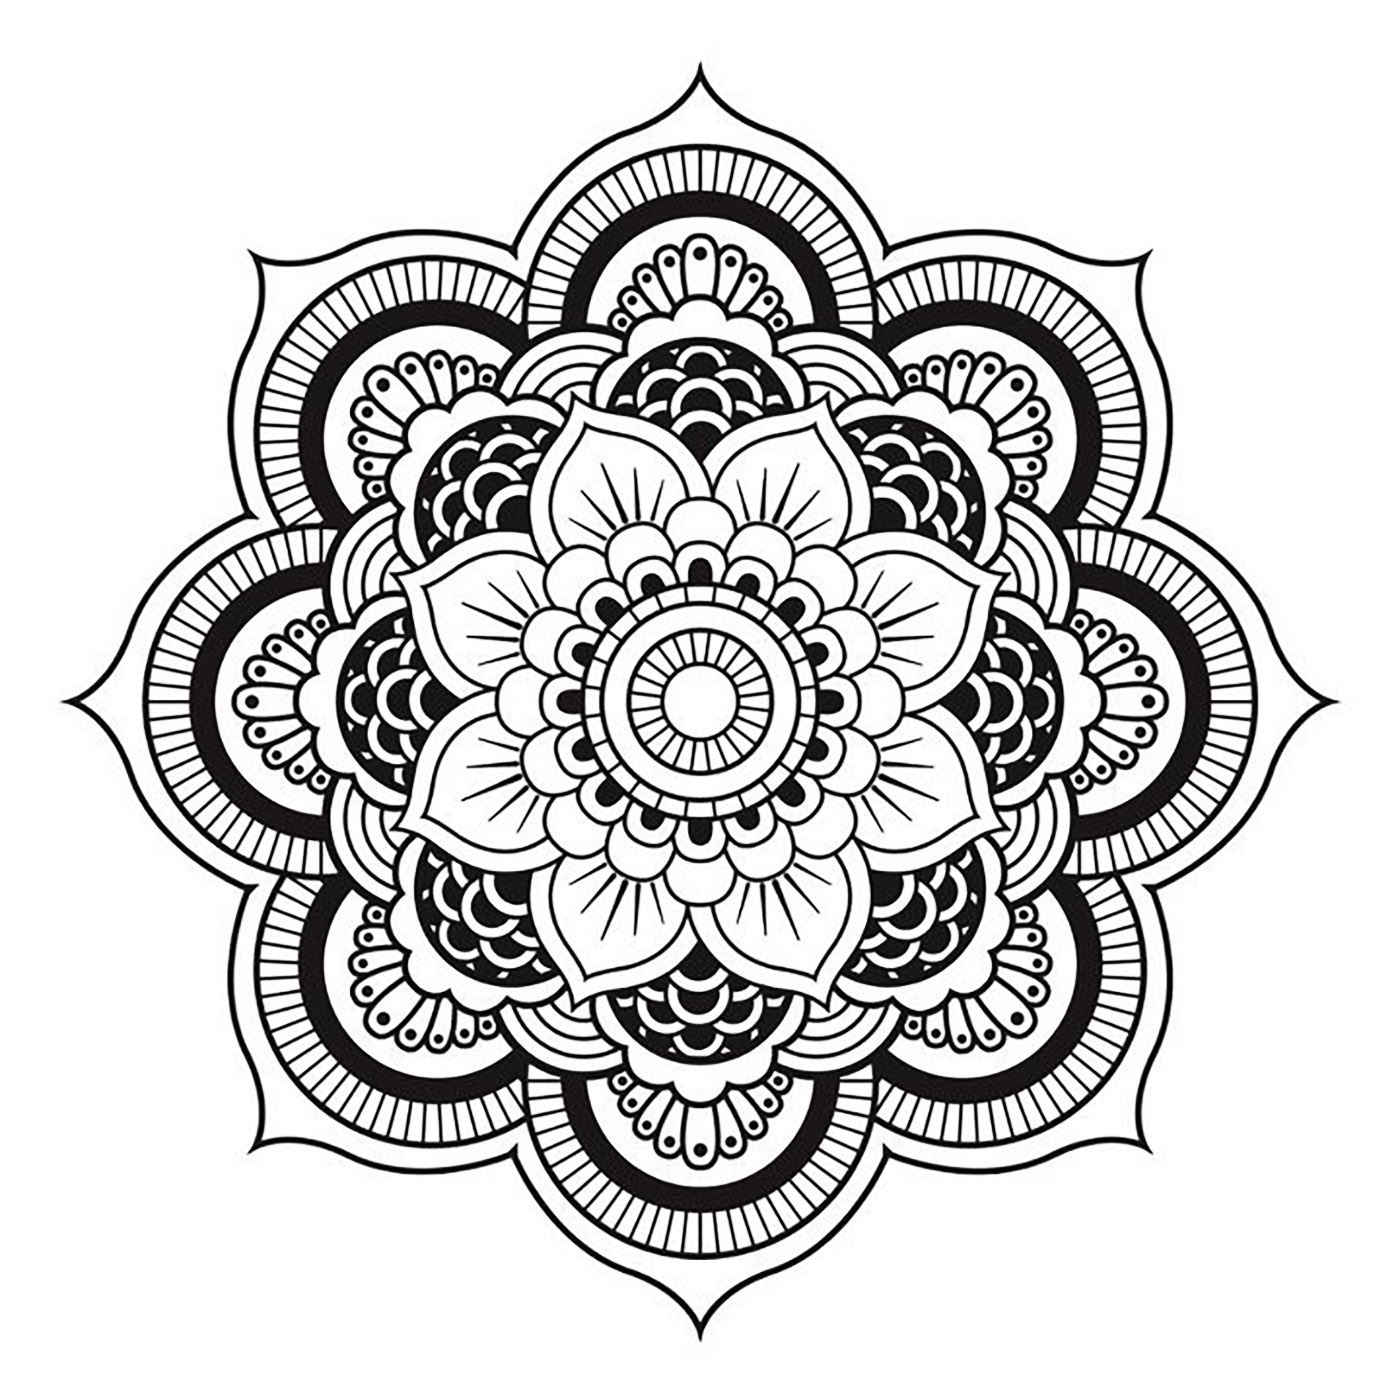 Mandala simples e regular, adequada para uma tatuagem no ombro